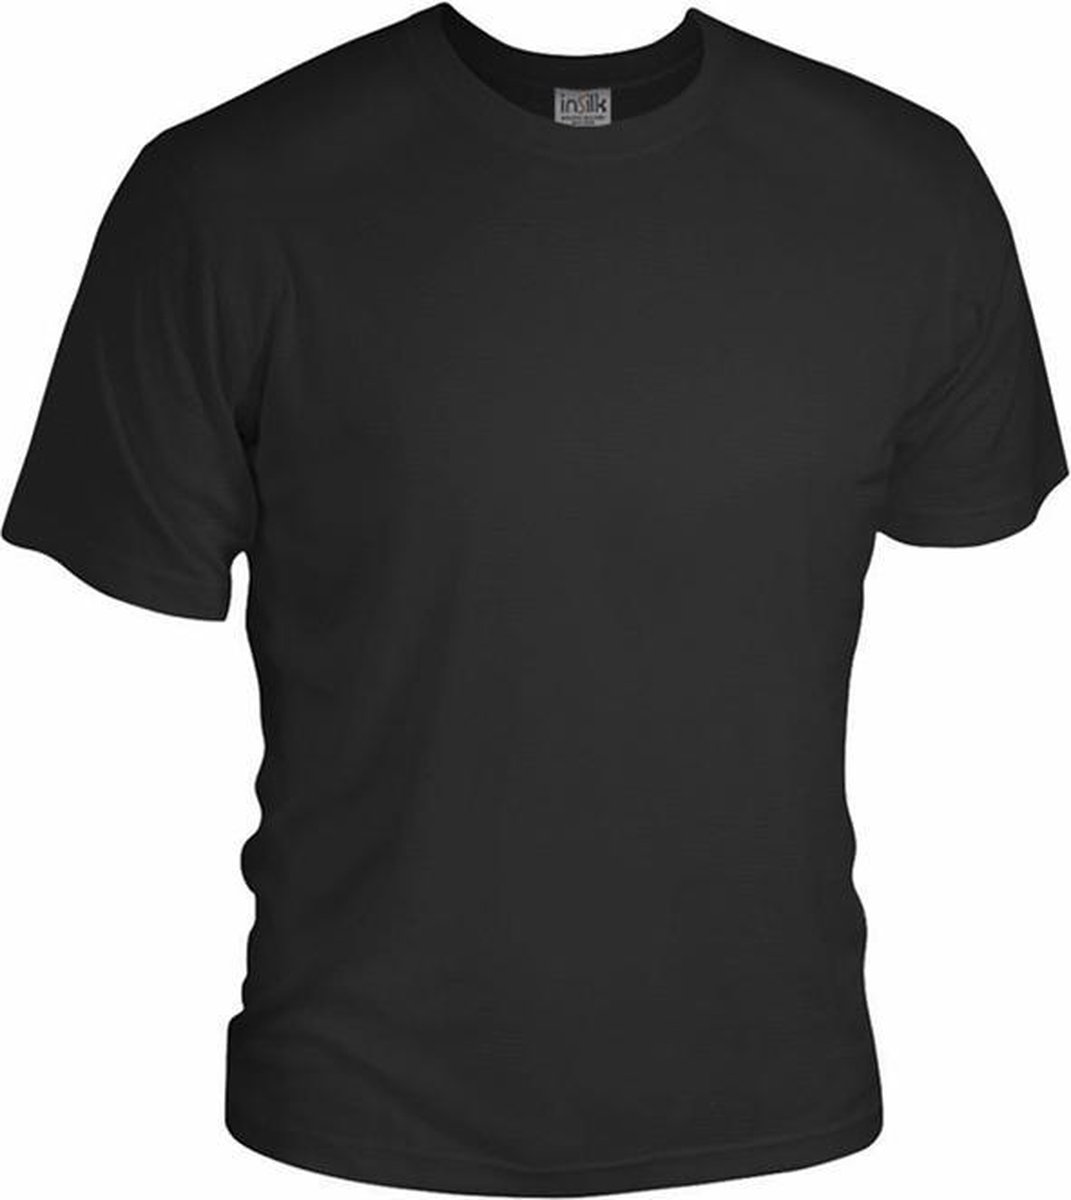 Zijden Heren T-Shirt Rondhals Zwart Large - 100% Zijde